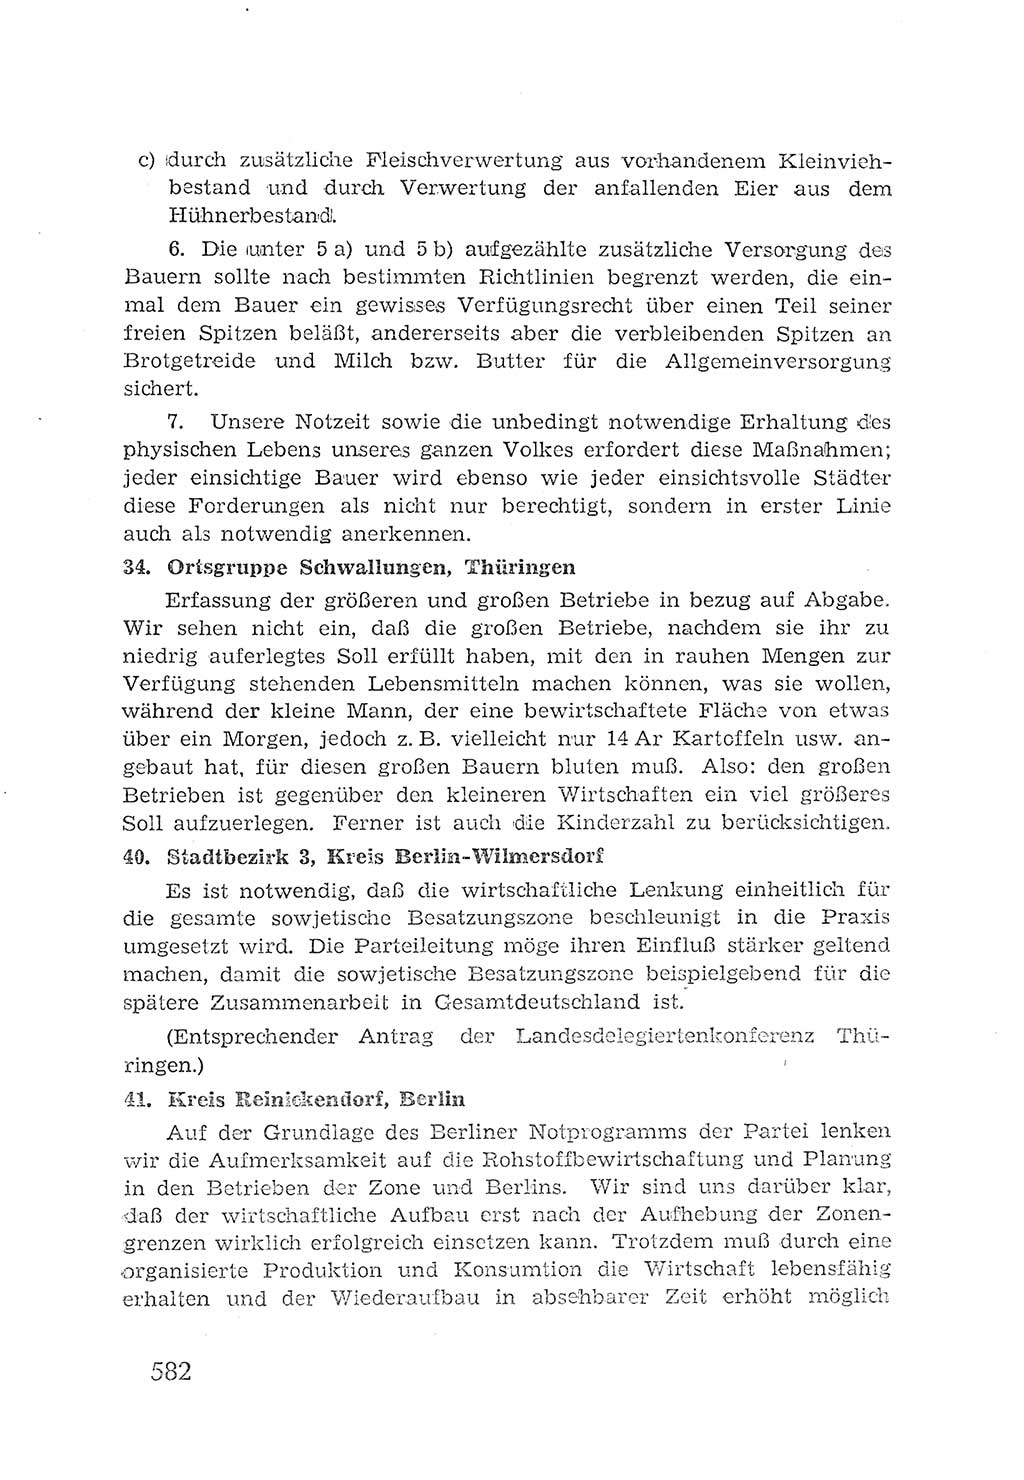 Protokoll der Verhandlungen des 2. Parteitages der Sozialistischen Einheitspartei Deutschlands (SED) [Sowjetische Besatzungszone (SBZ) Deutschlands] 1947, Seite 582 (Prot. Verh. 2. PT SED SBZ Dtl. 1947, S. 582)